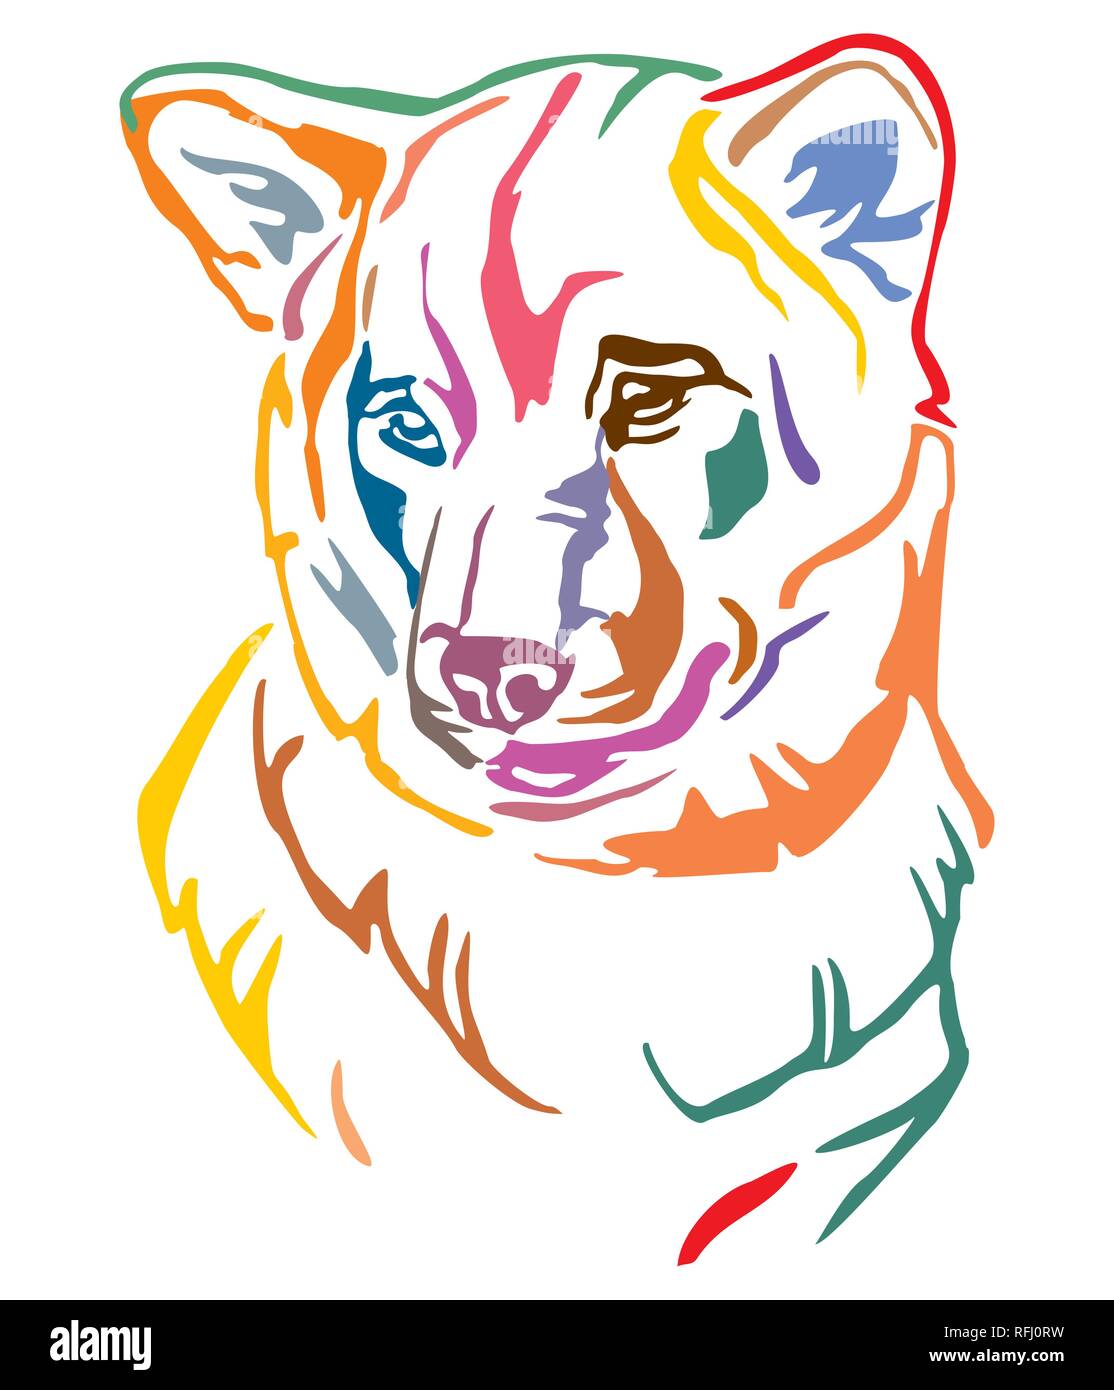 Colorato contorno decorativo ritratto di cane Shiba Inu, illustrazione vettoriale in colori diversi isolati su sfondo bianco. Immagine per design e tatt Illustrazione Vettoriale